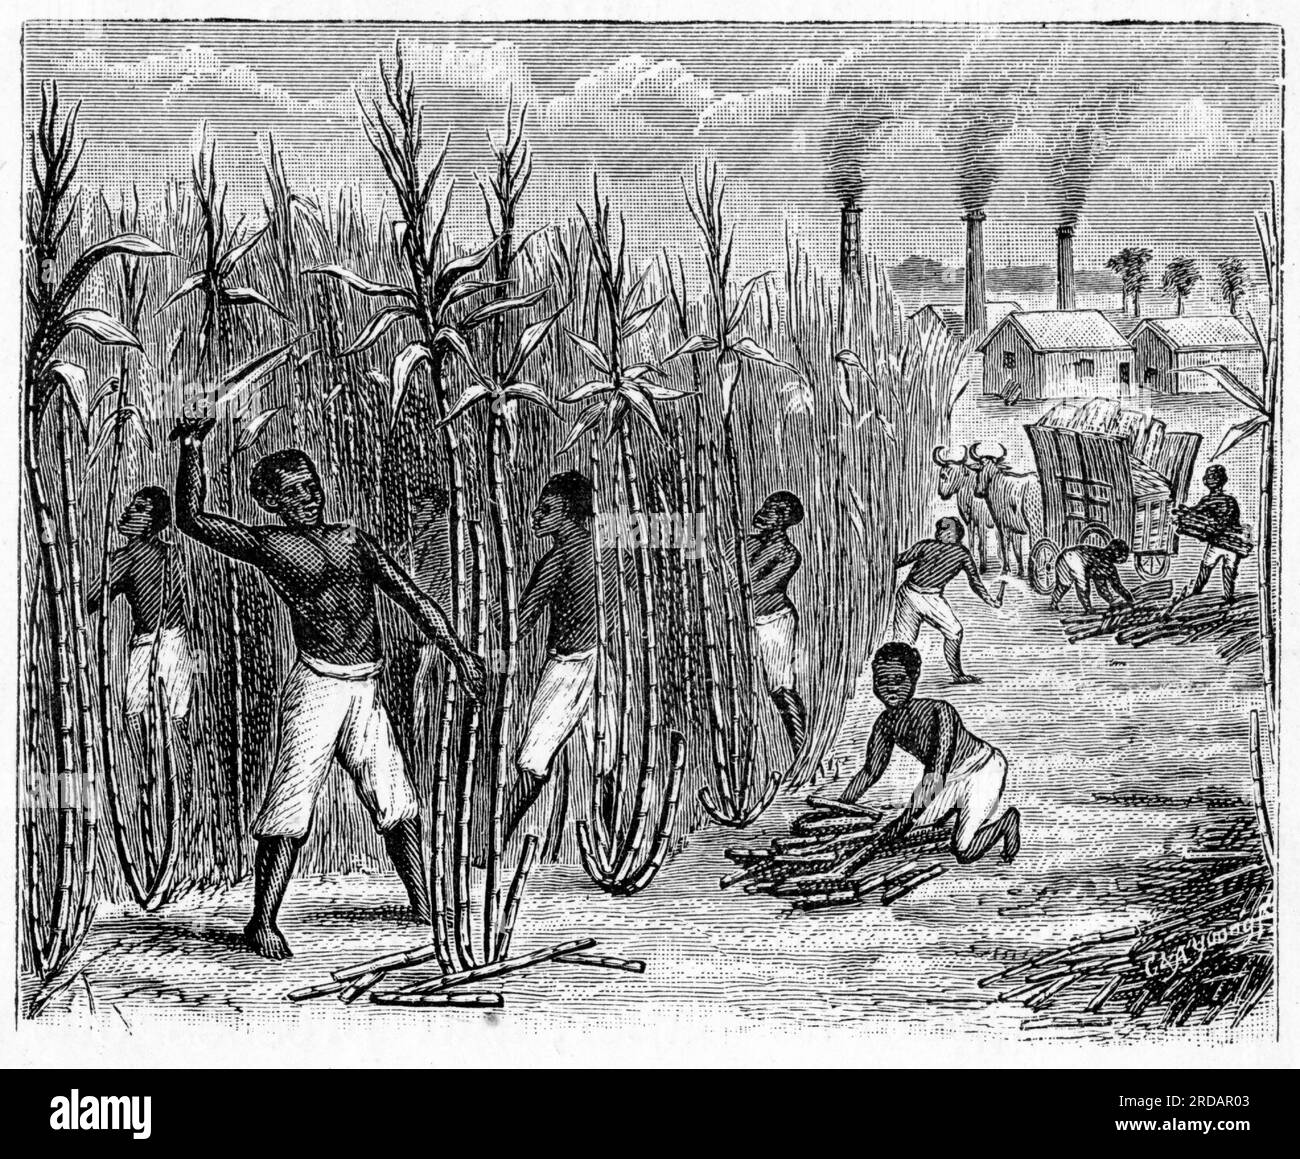 Gravure d'esclaves récoltant de la canne à sucre avec une raffinerie en arrière-plan, vers 1880 Banque D'Images